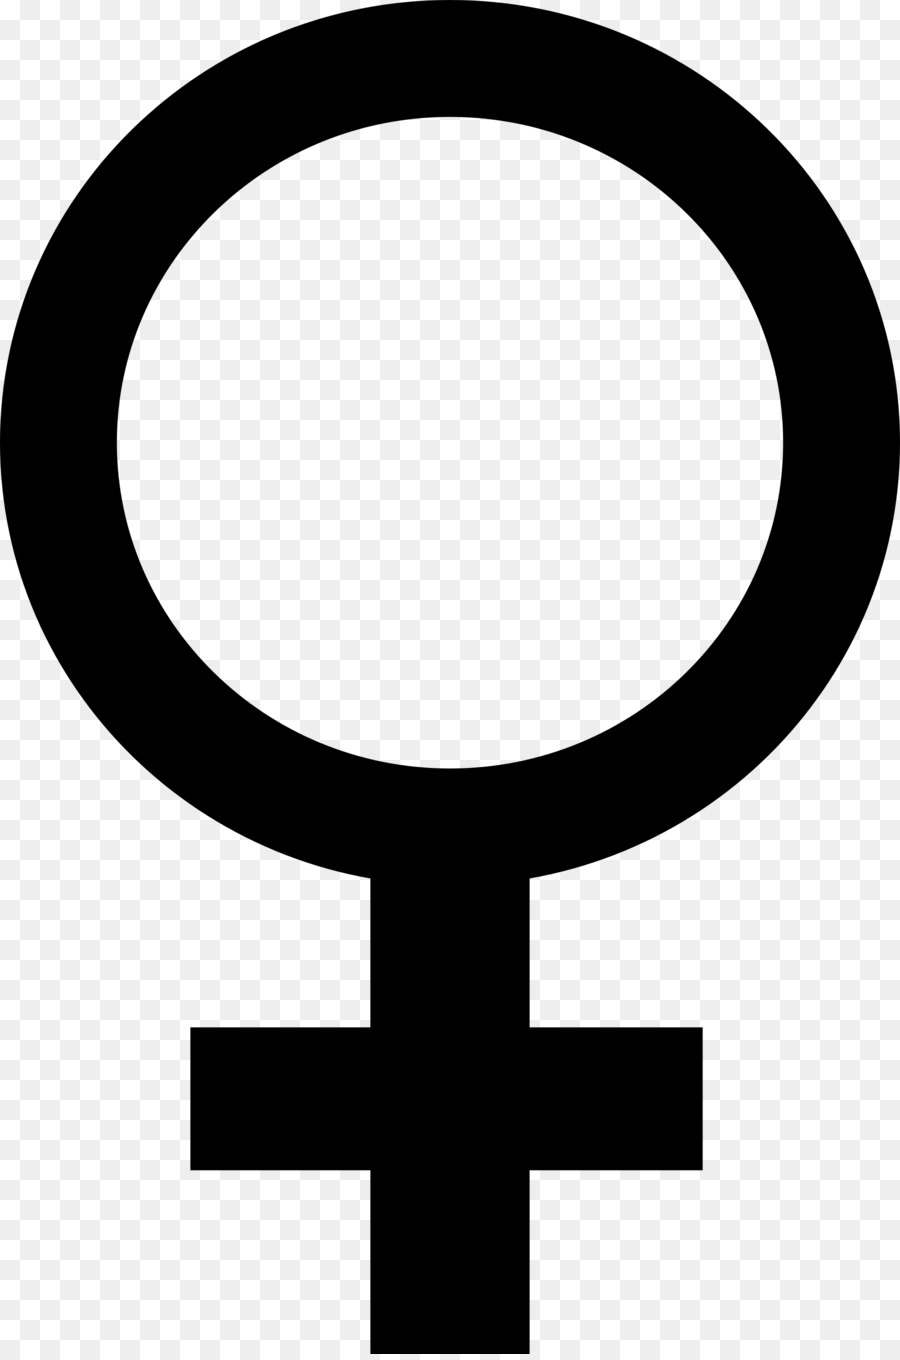 Venus Giới tính biểu tượng Nữ, người phụ Nữ - Giới